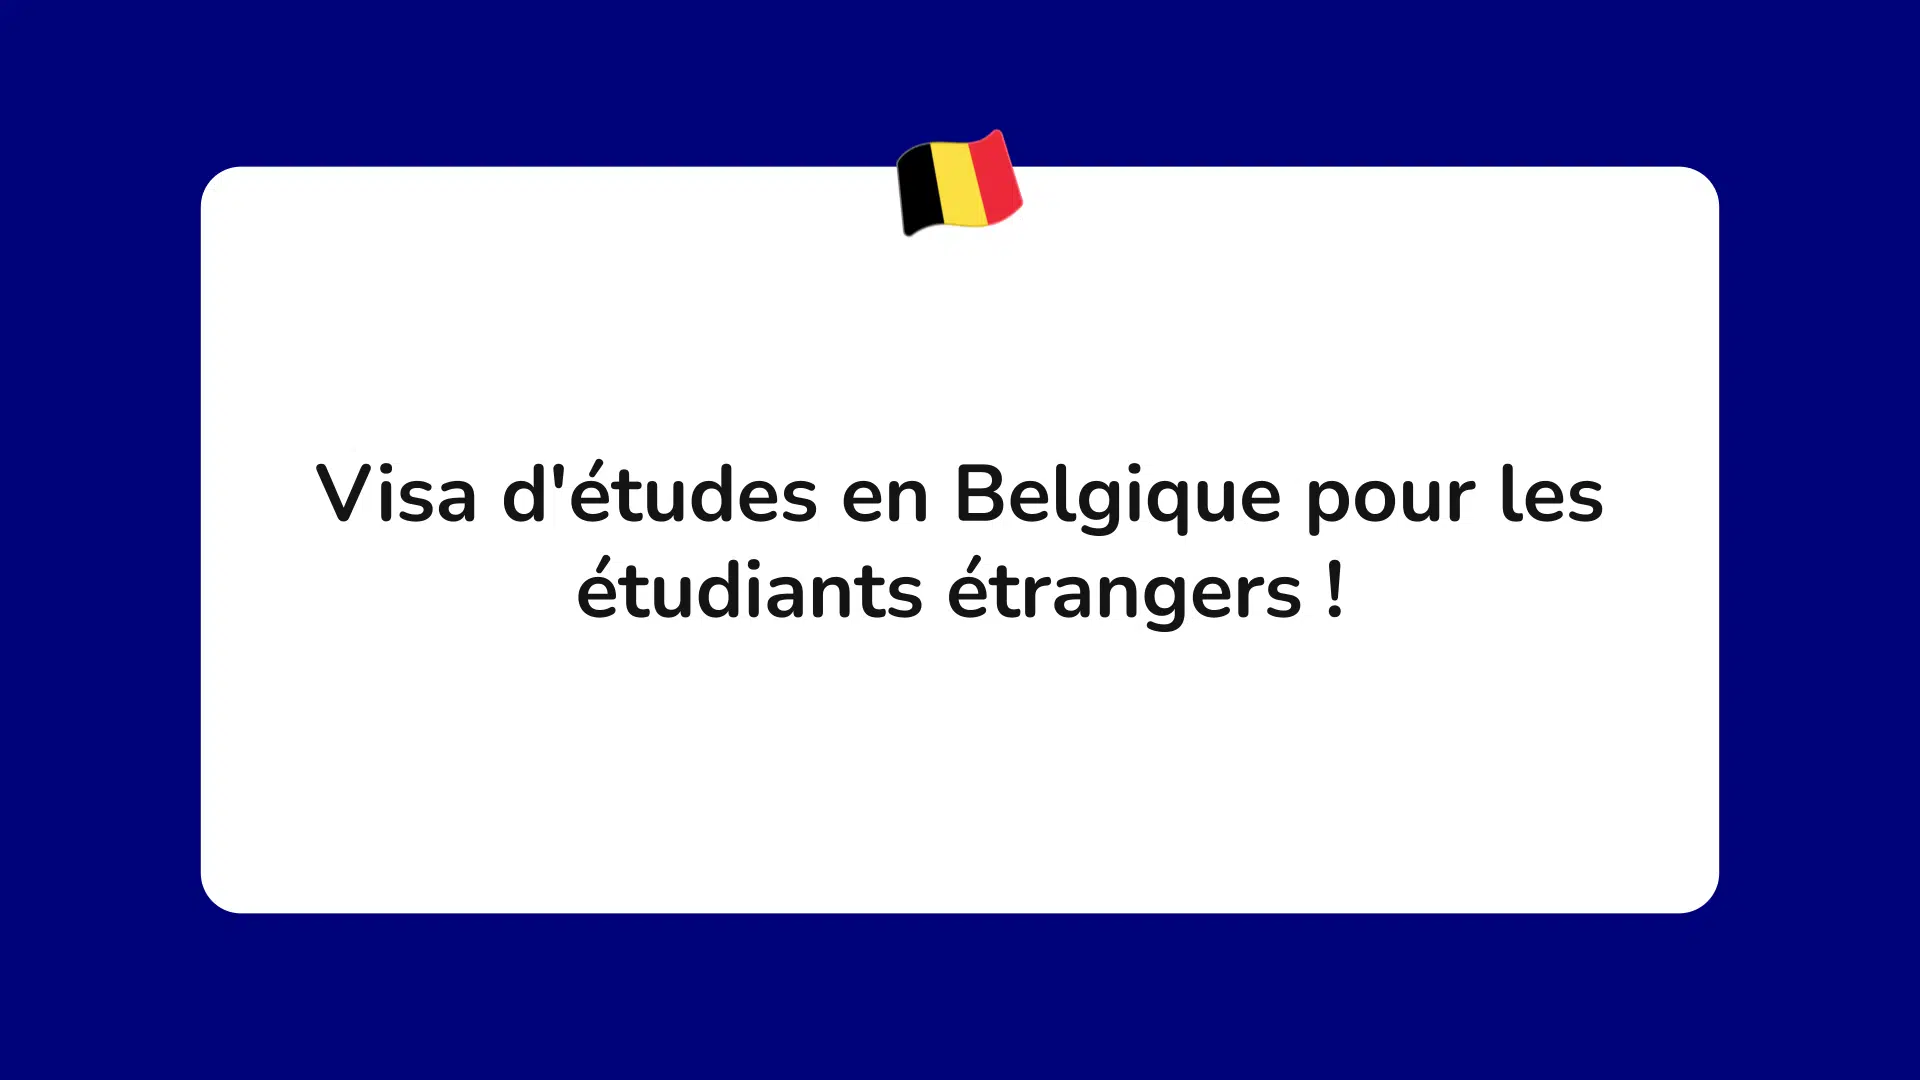 Visa d'études en Belgique pour les étudiants étrangers !